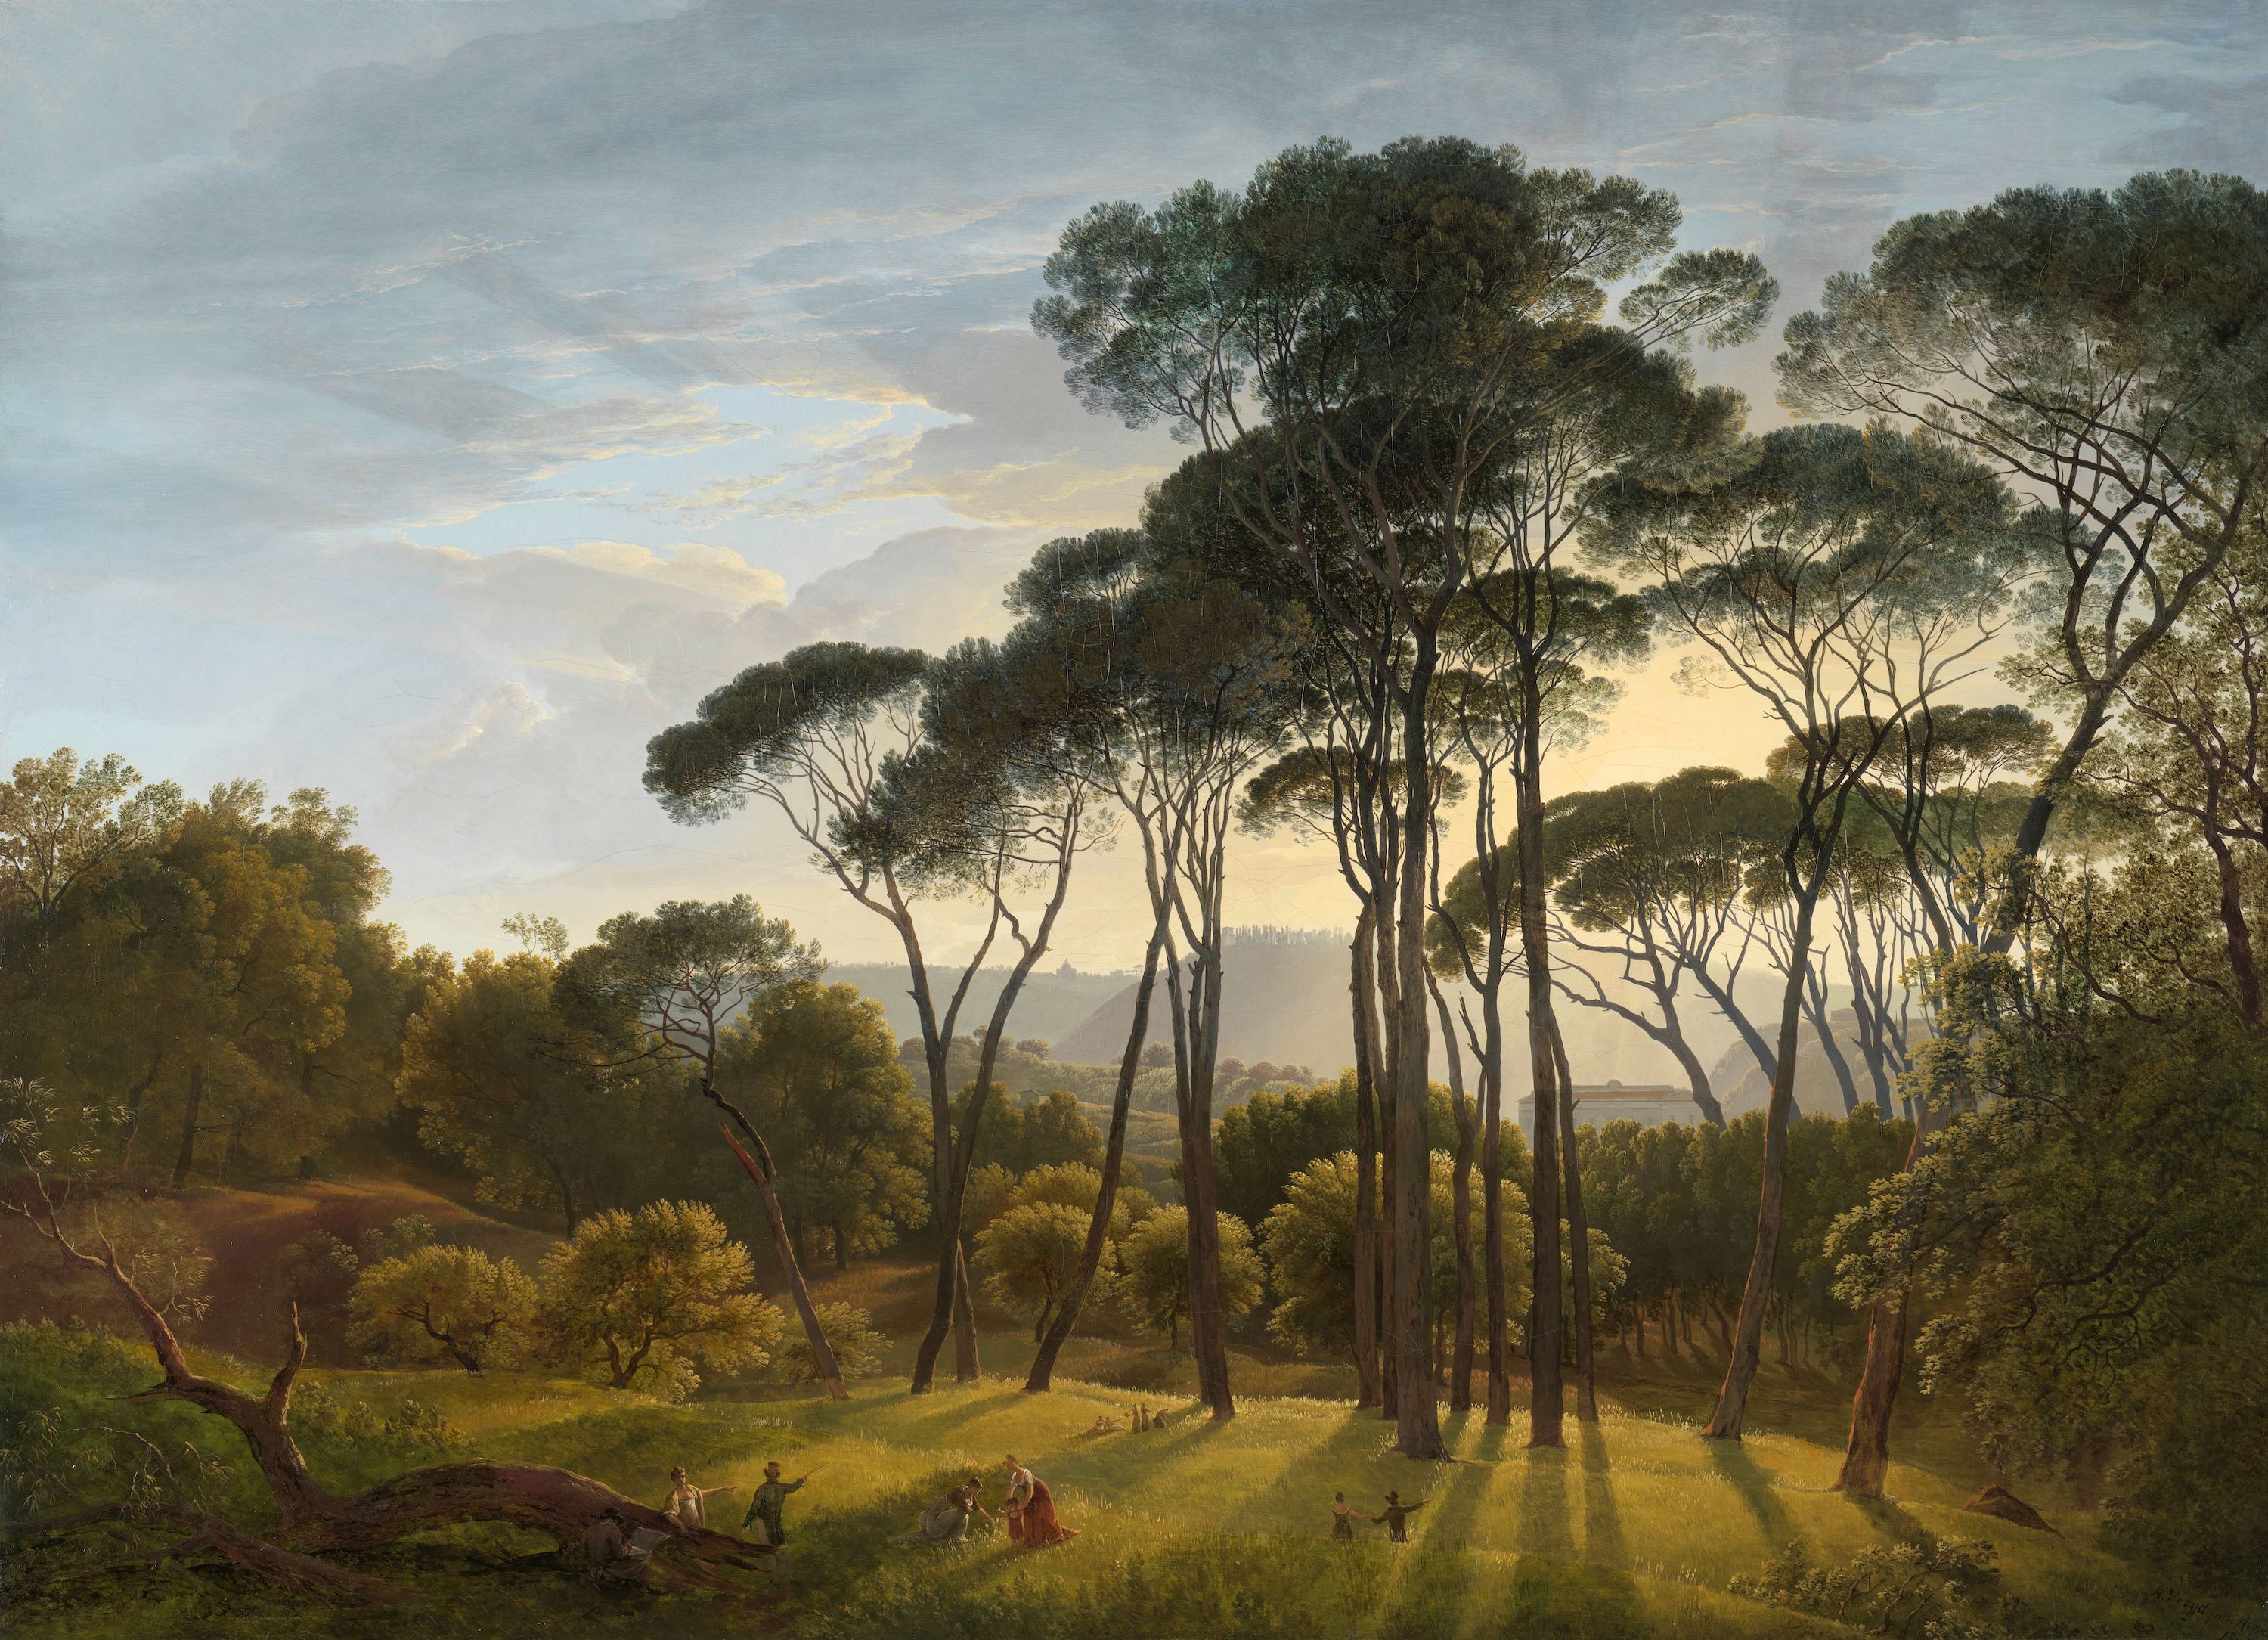 Italian Landscape with Umbrella Pines by Hendrik Voogd - 1807 - 101.5 × 138.5 cm Rijksmuseum